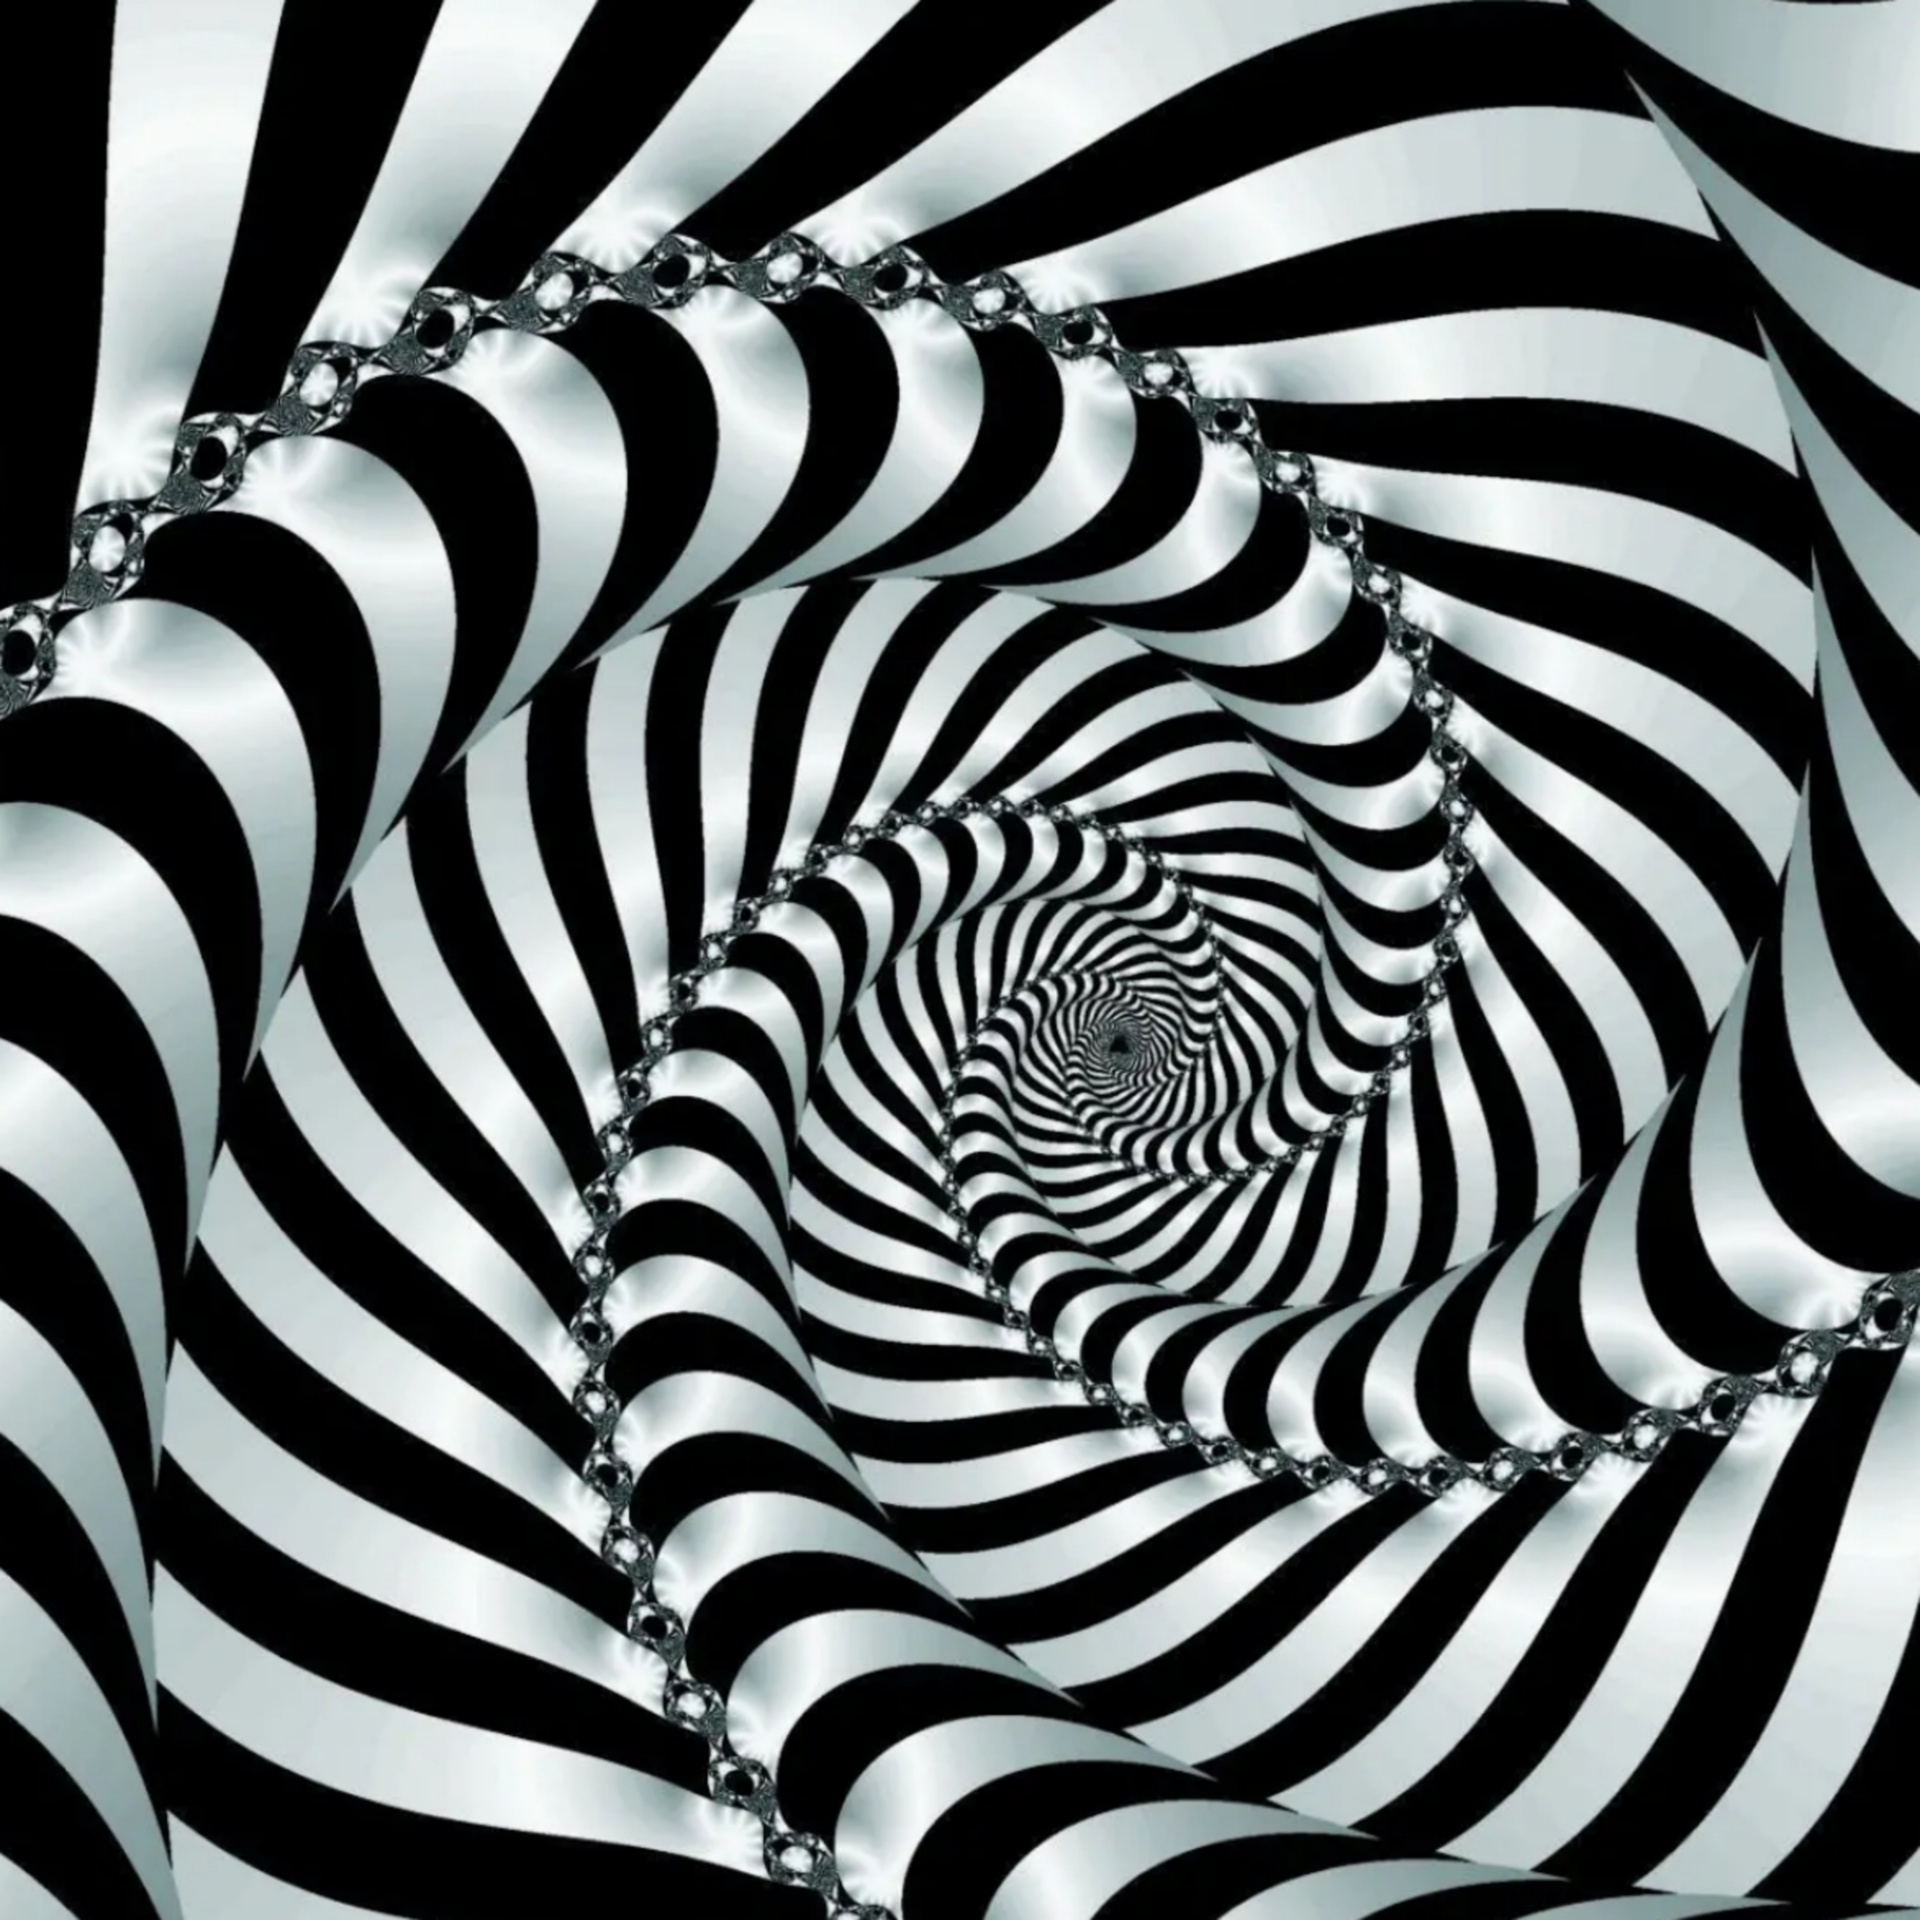 La imagen muestra una serie de líneas que se unen en el centro en espiral y que parece que tienen volumen y se salen del dibujo